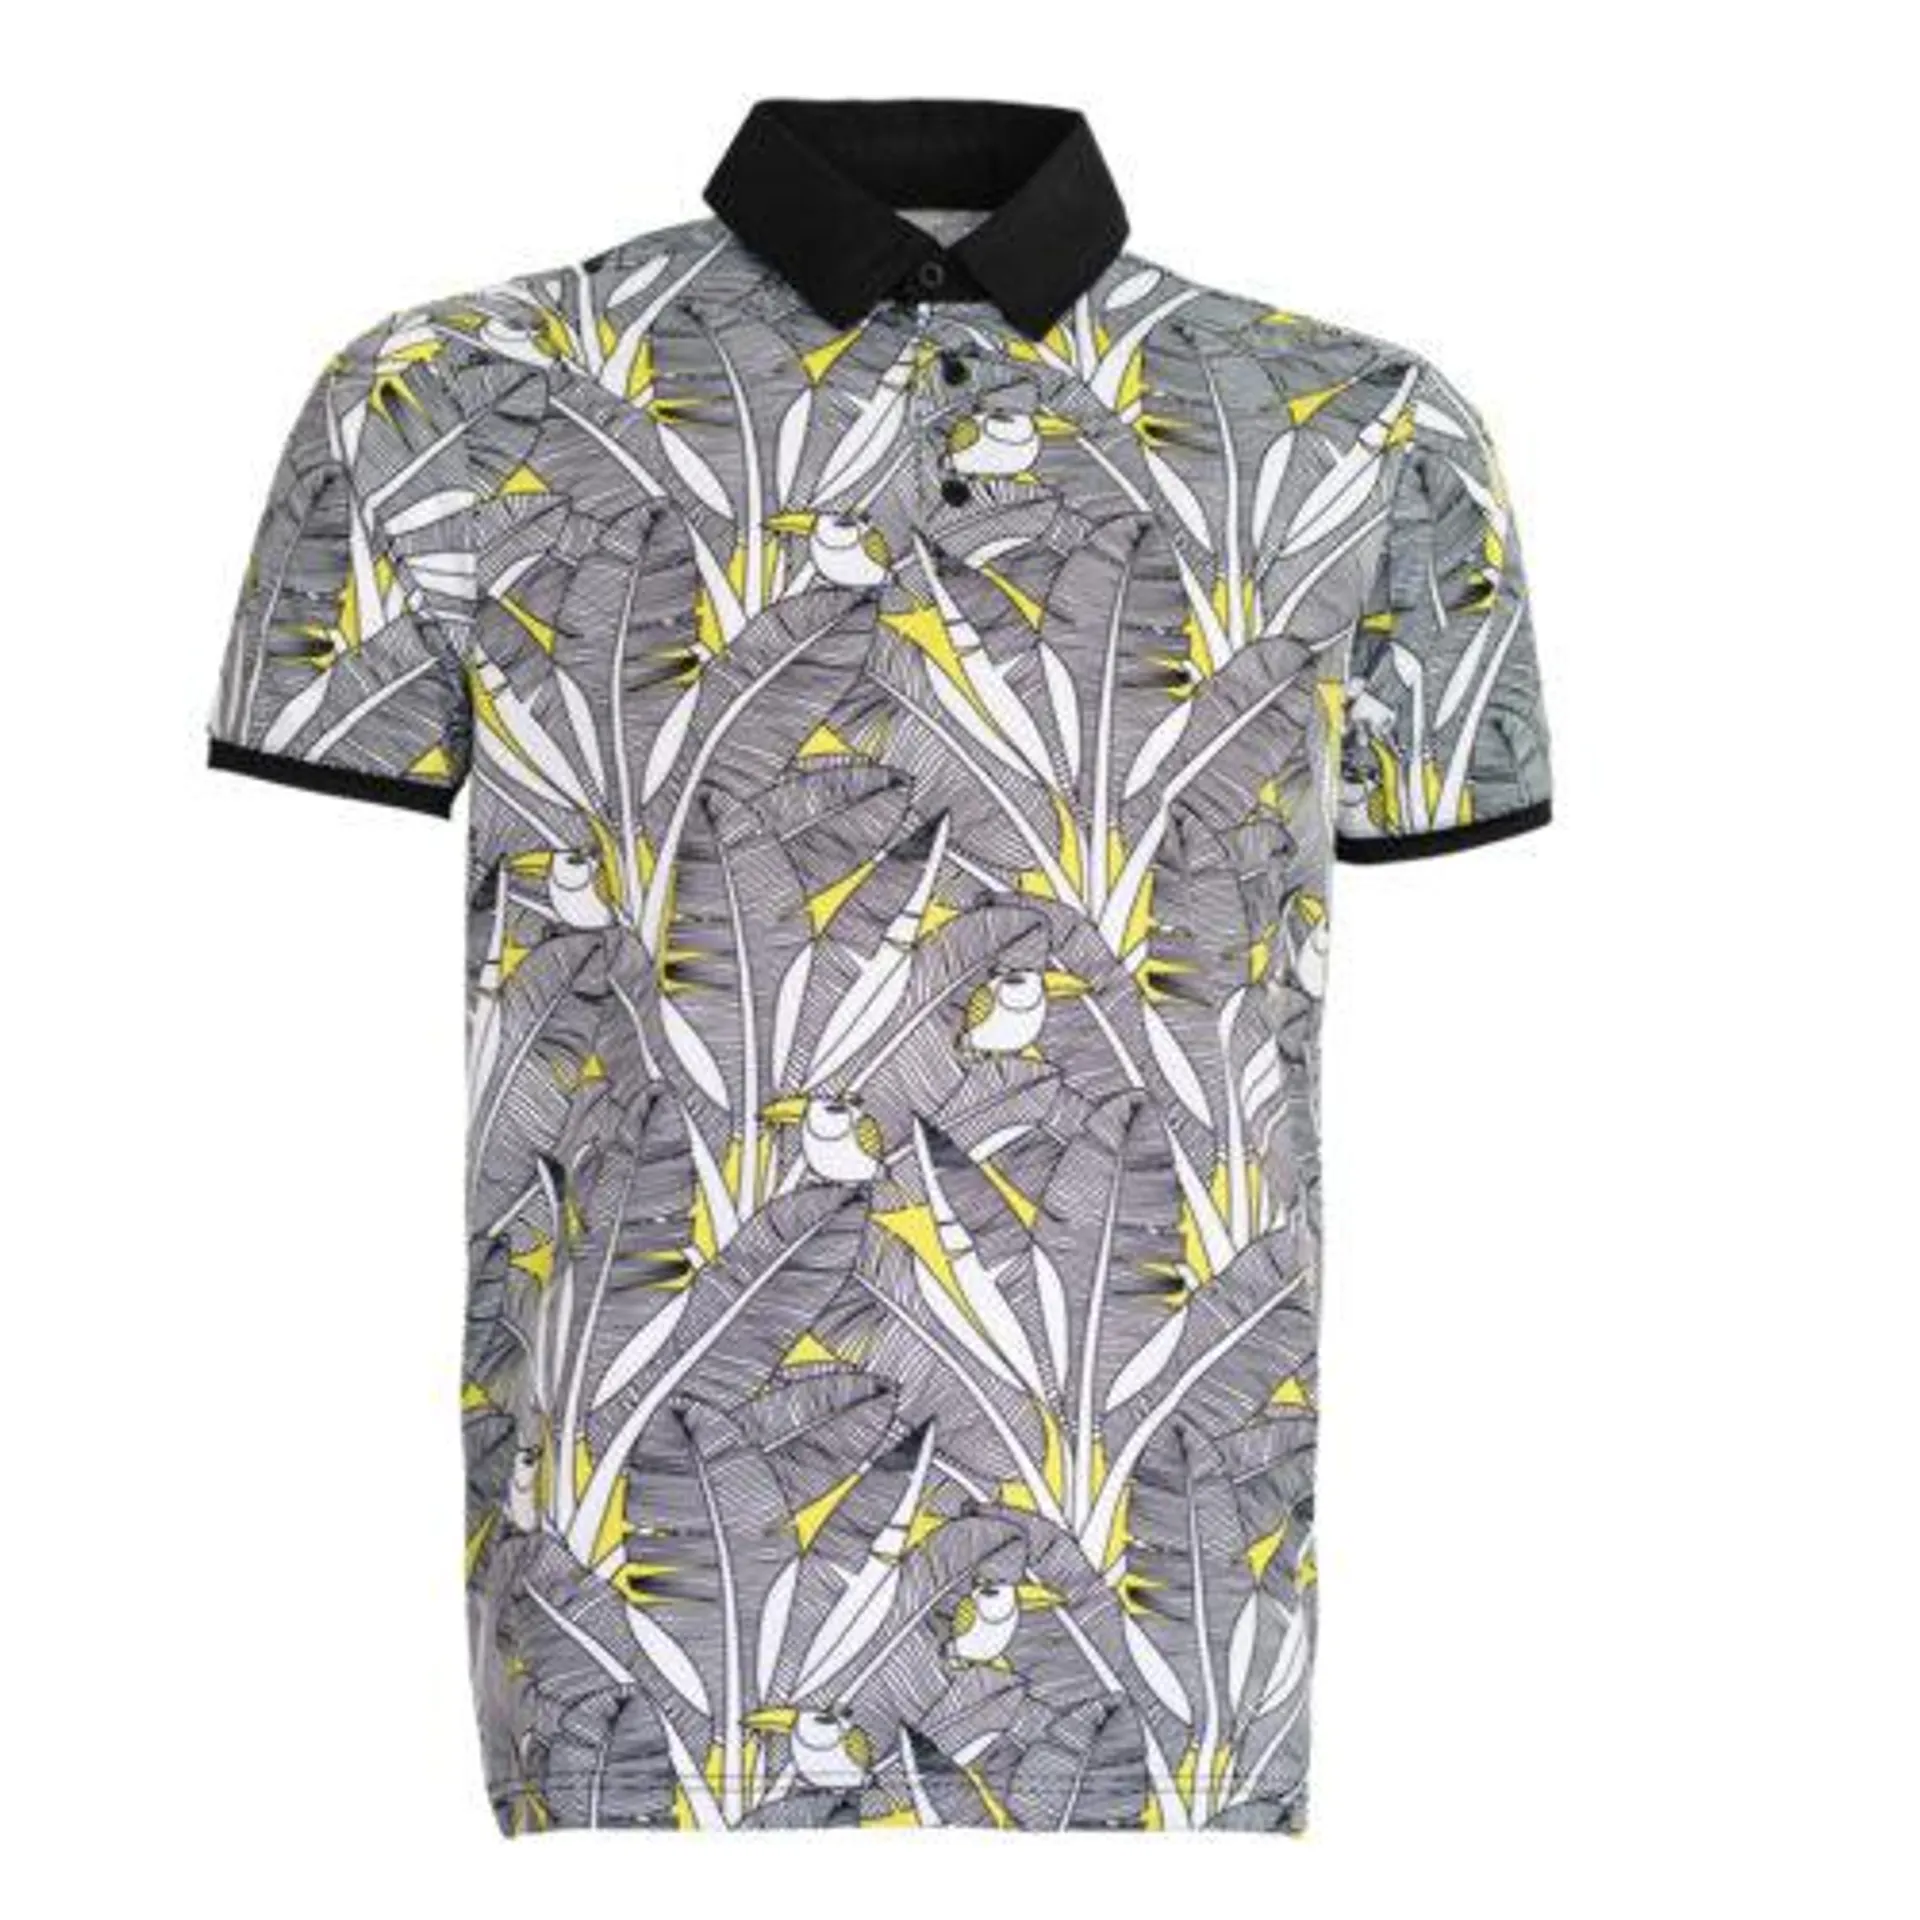 Cross Creek Palm Shirt – Black/White/Yellow